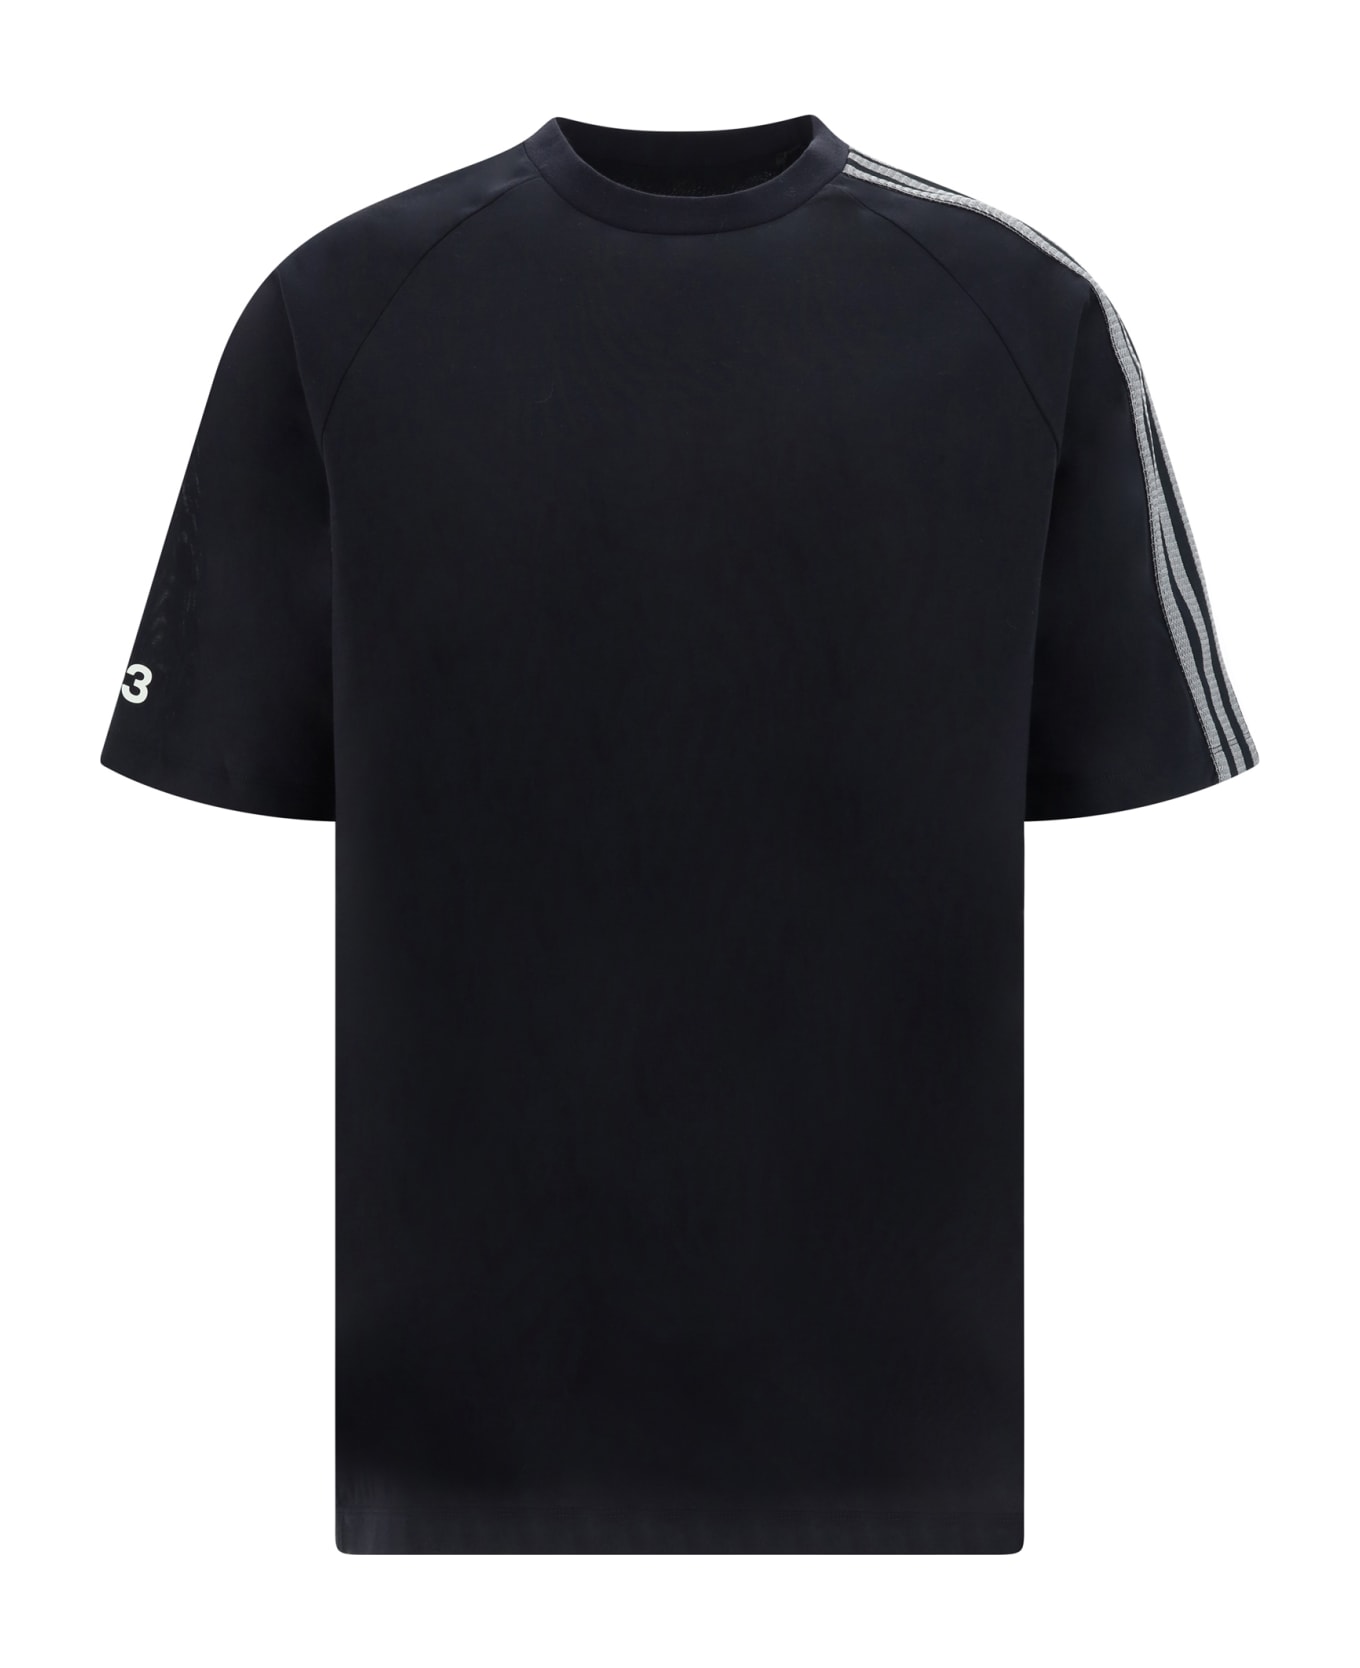 Y-3 T-shirt - Black/owhite